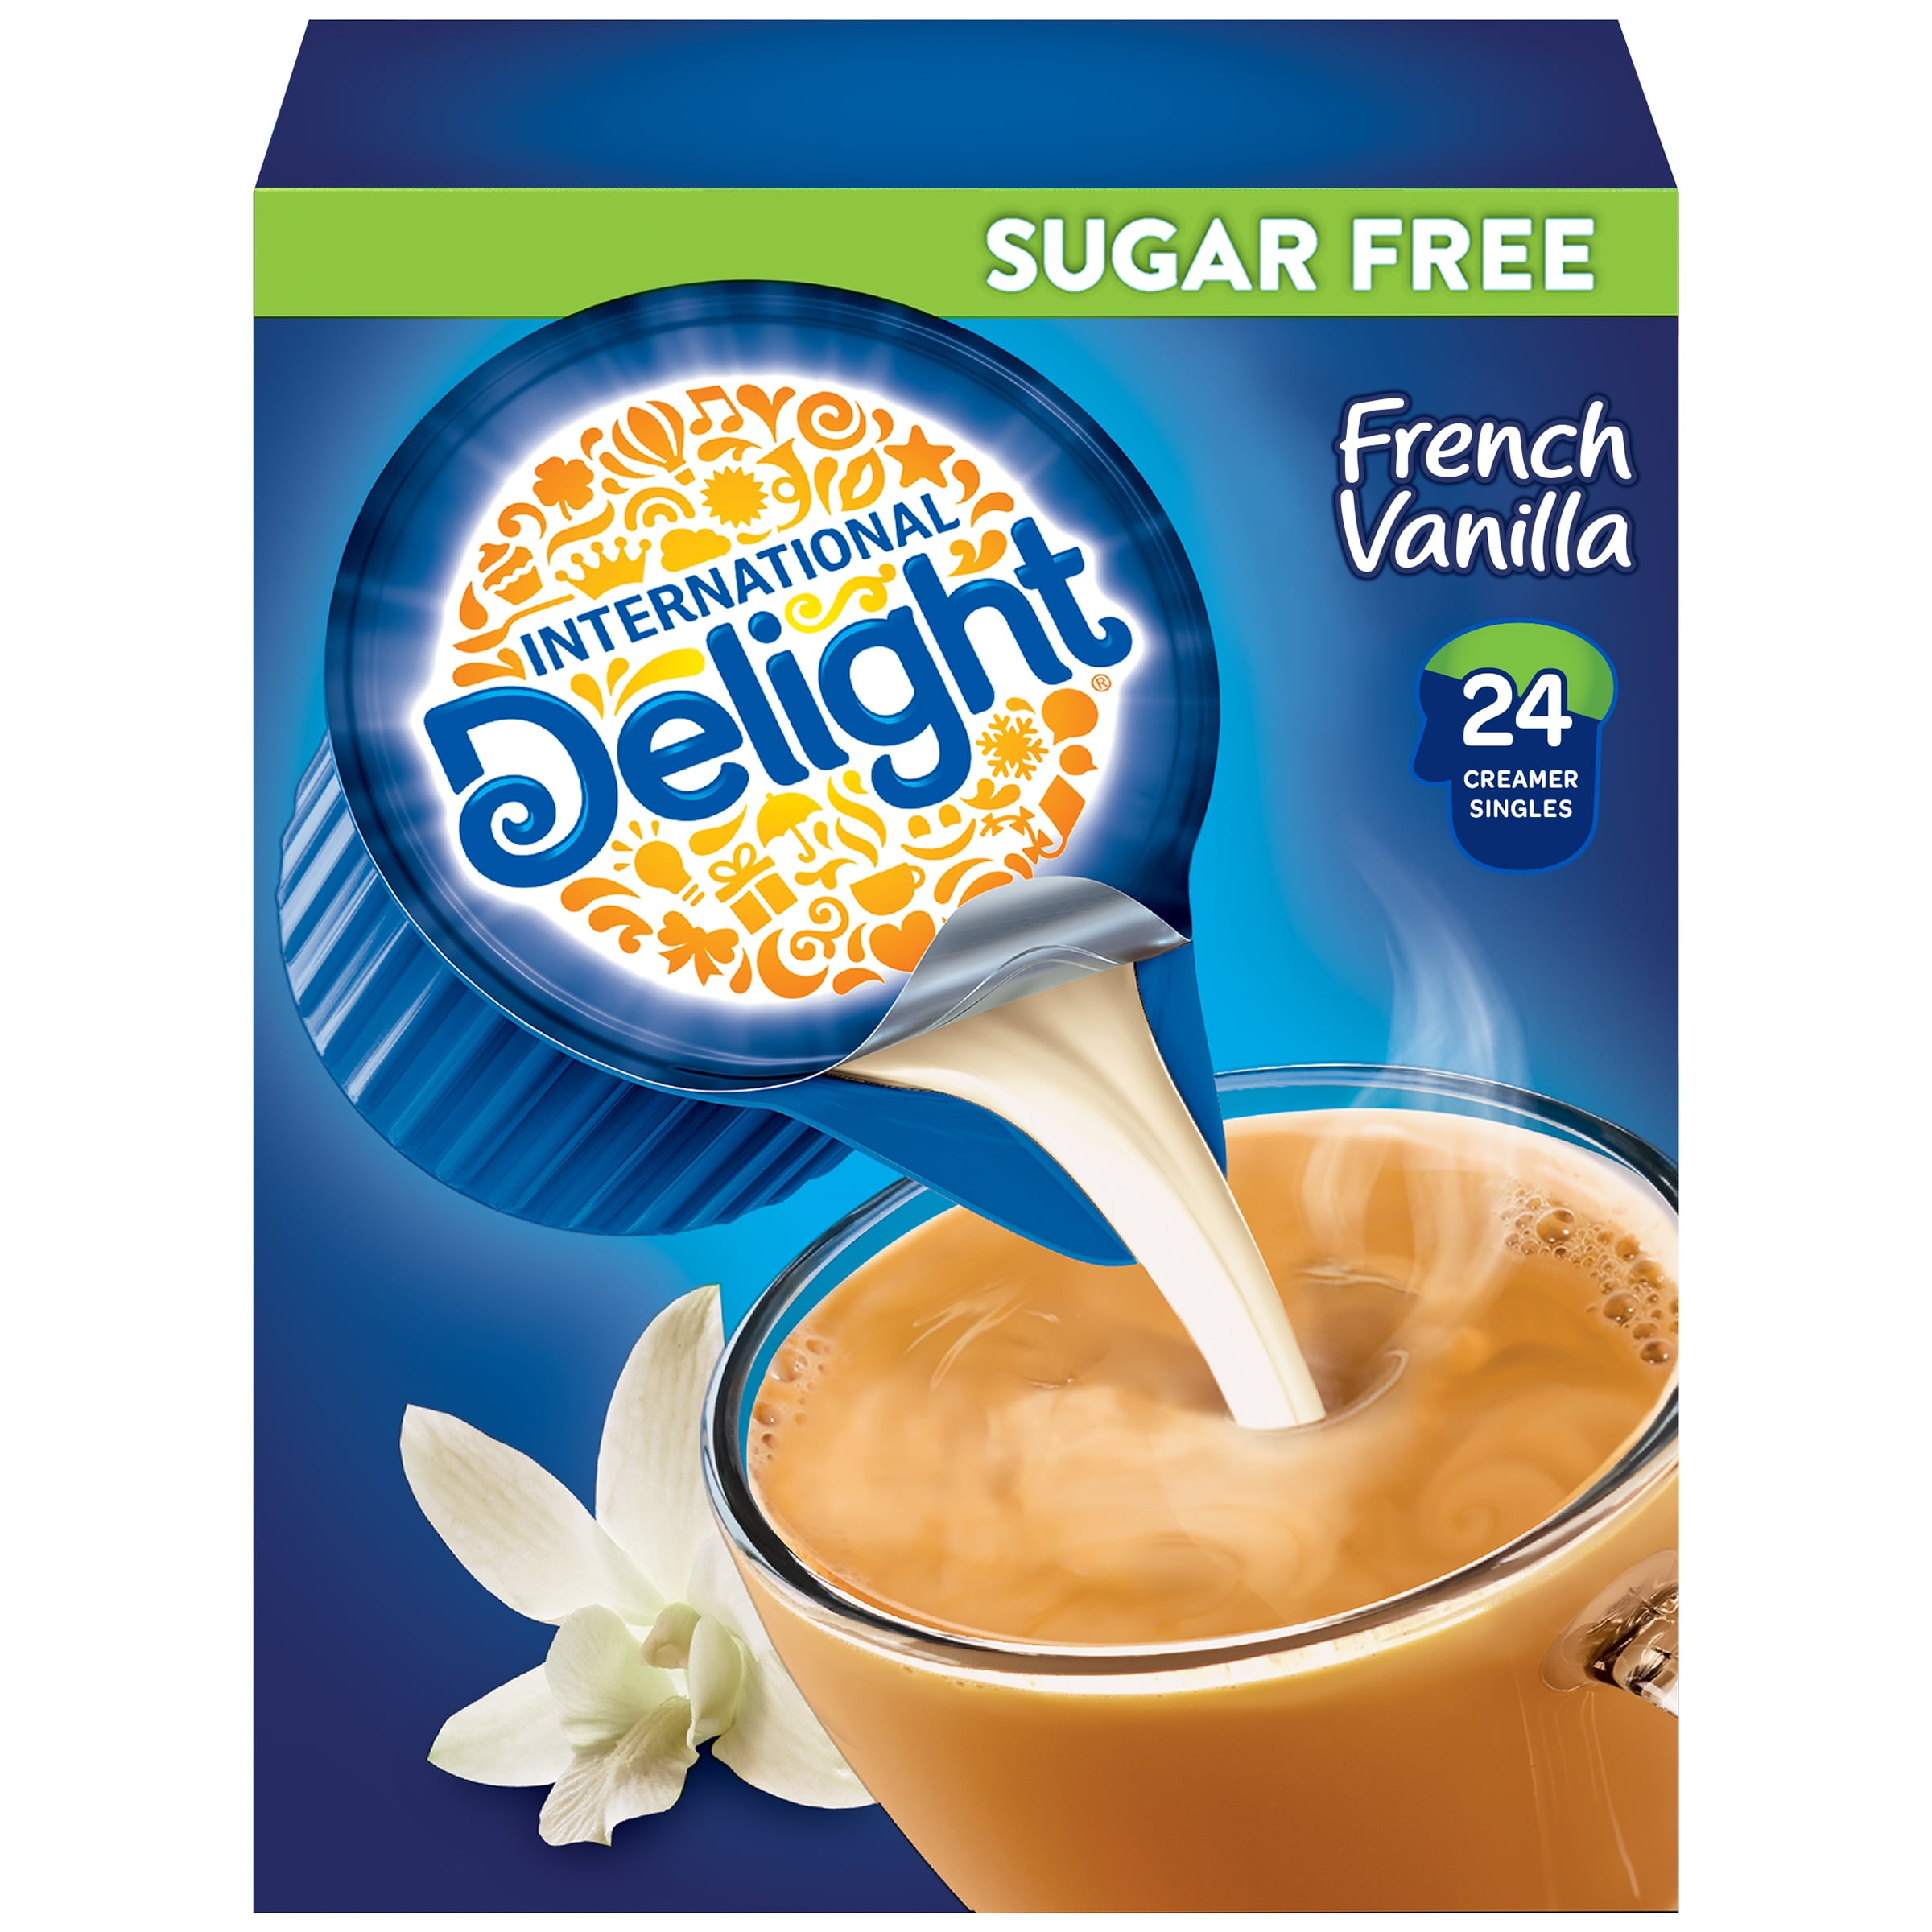 French vanilla. Creamer. Sugars Delight. Sugar’s Delight / Sugars Delight / сладкое очарование.